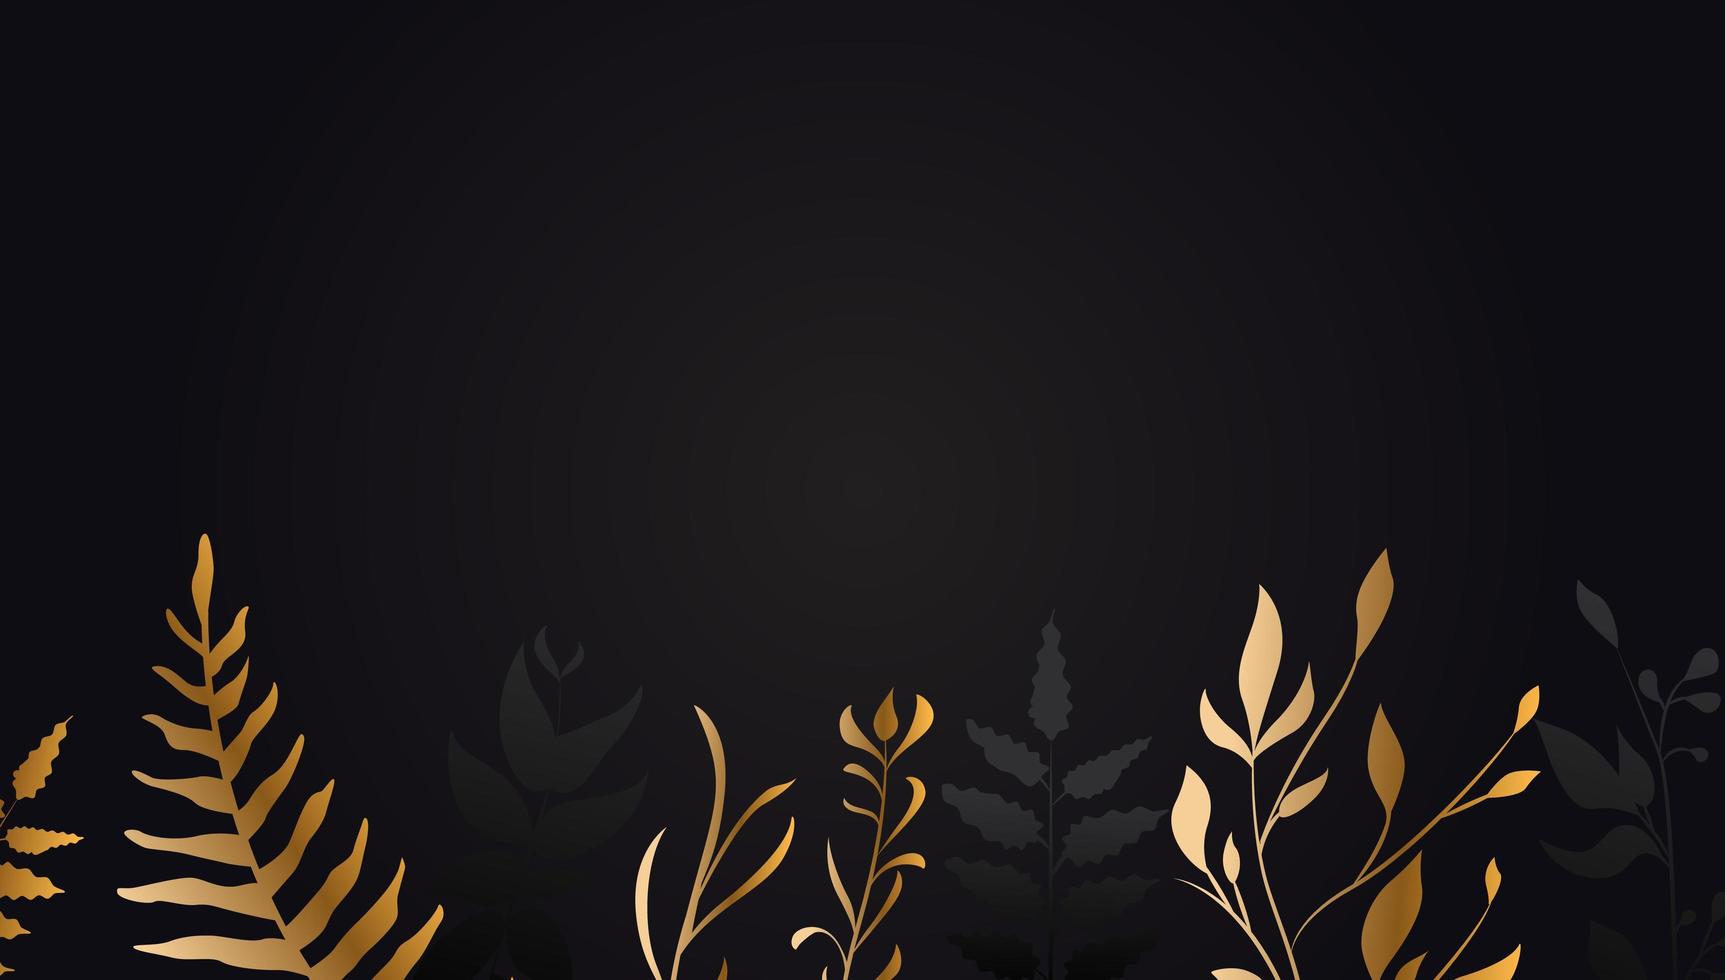 Golden Flower on Black Background Gold Leaf vector